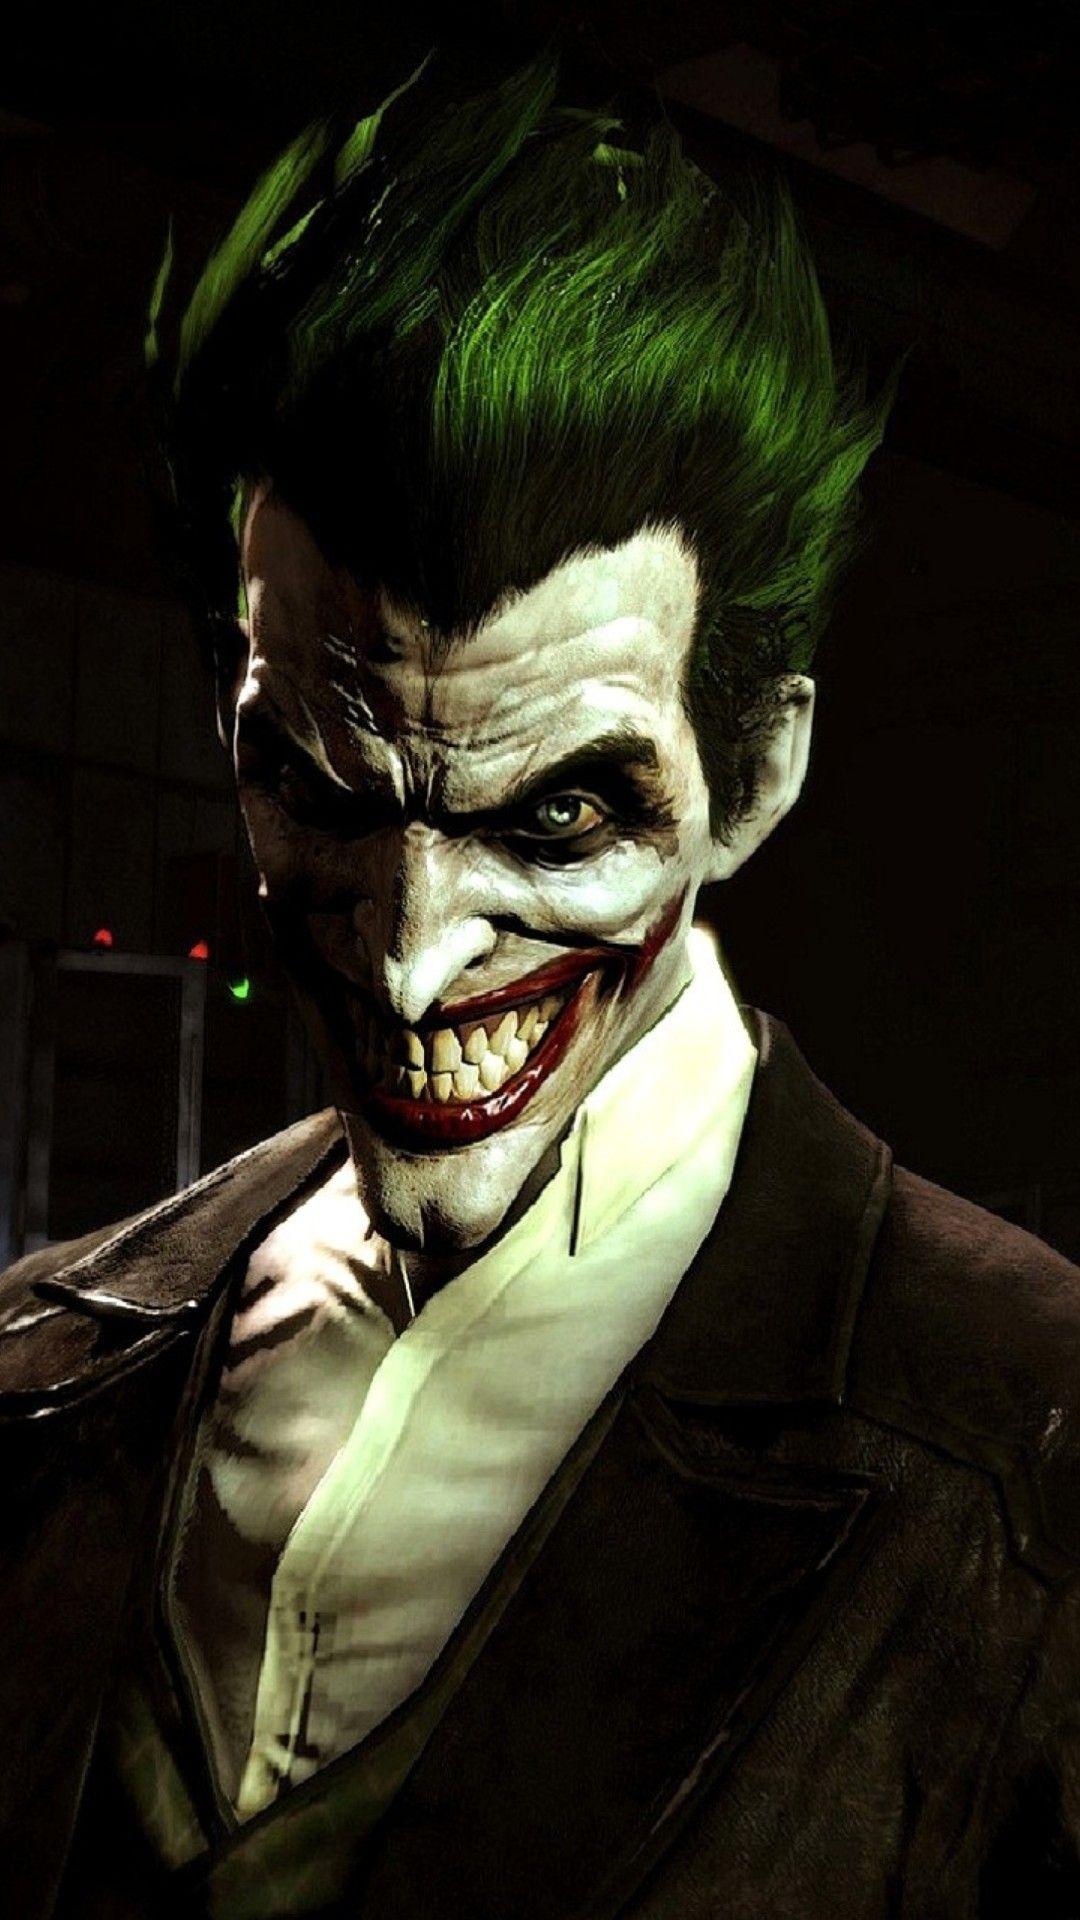 1080x1920 HD Hình Nền Joker trên iPhone